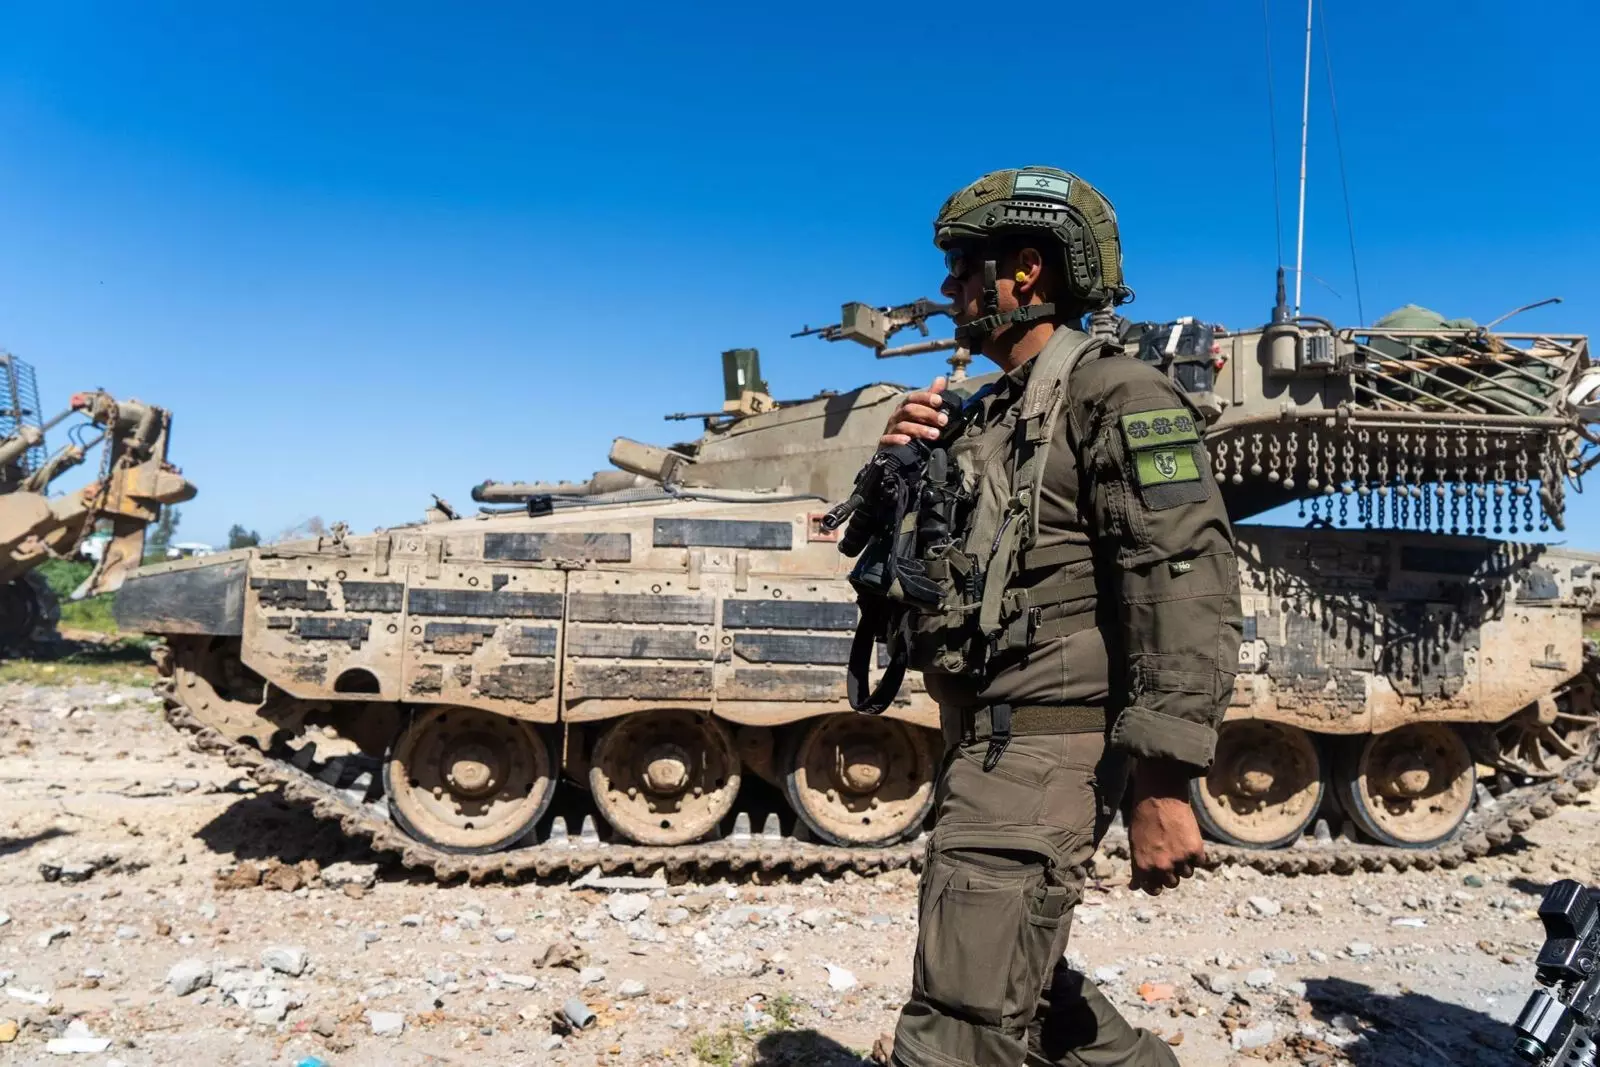 हमले से पहले राफा में रह रहे आम लोगों को बाहर निकालेगा इज़राइल: अधिकारी